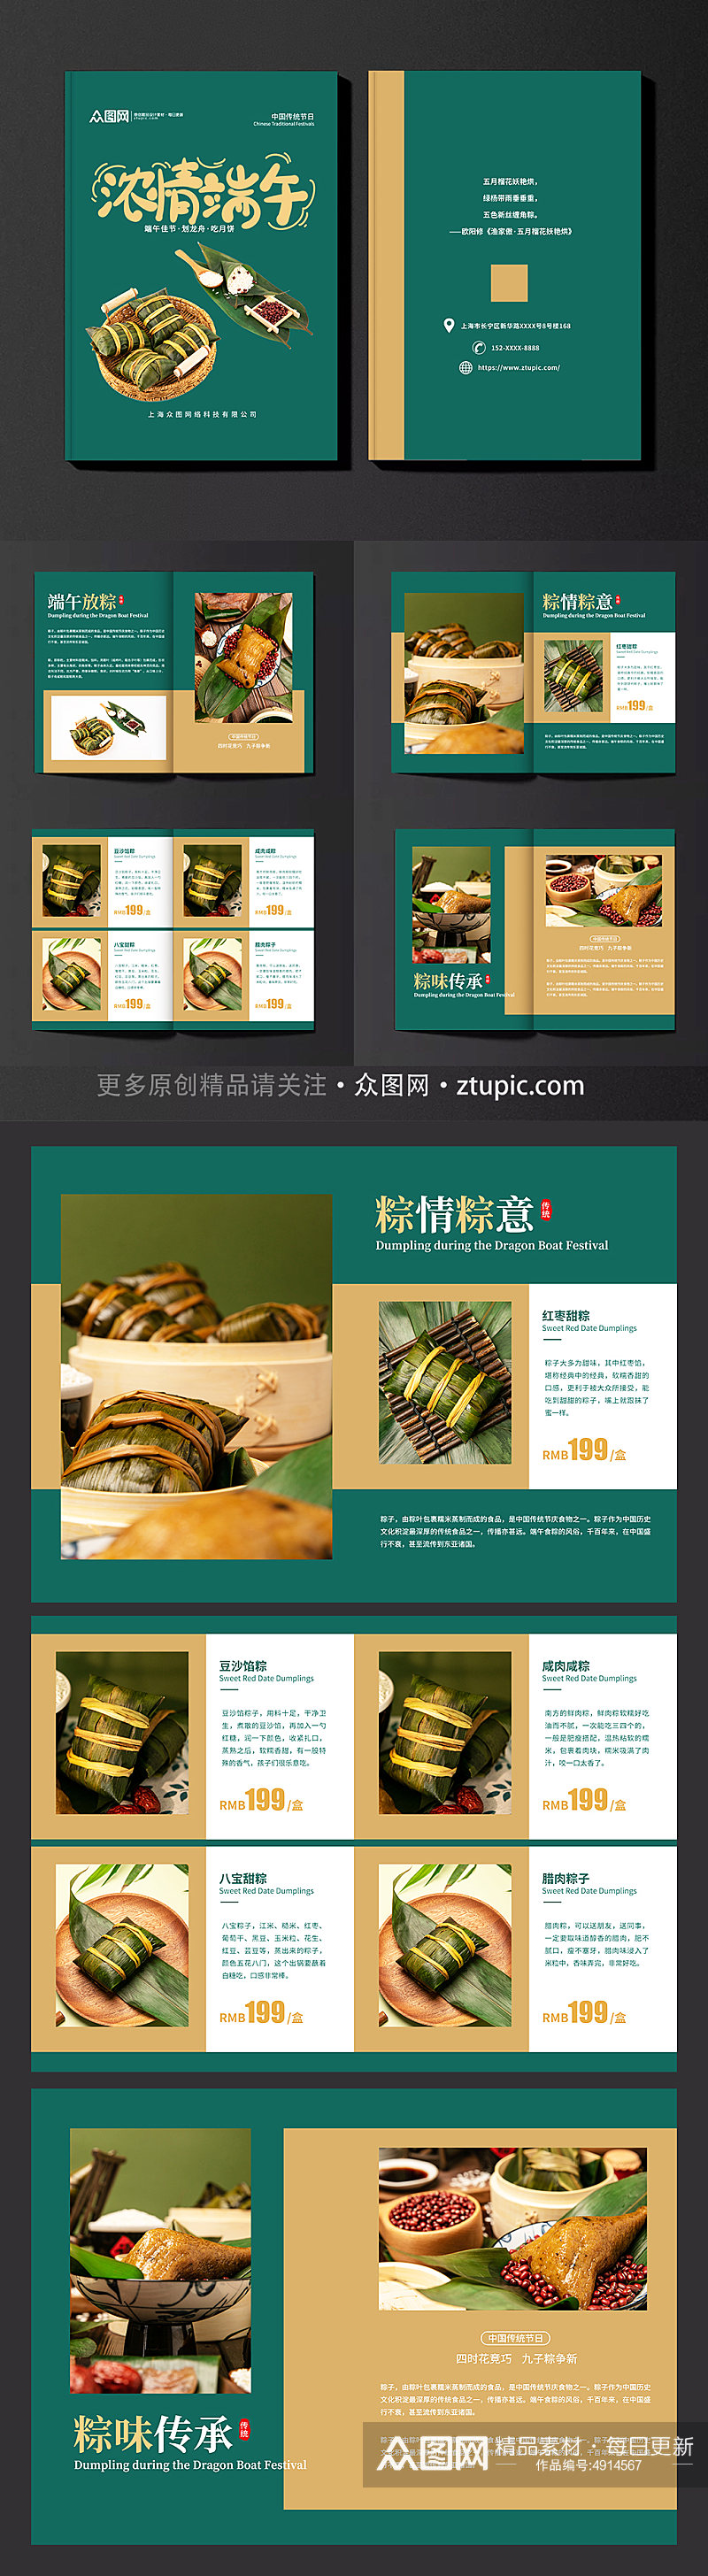 高级端午节粽子美食产品画册素材